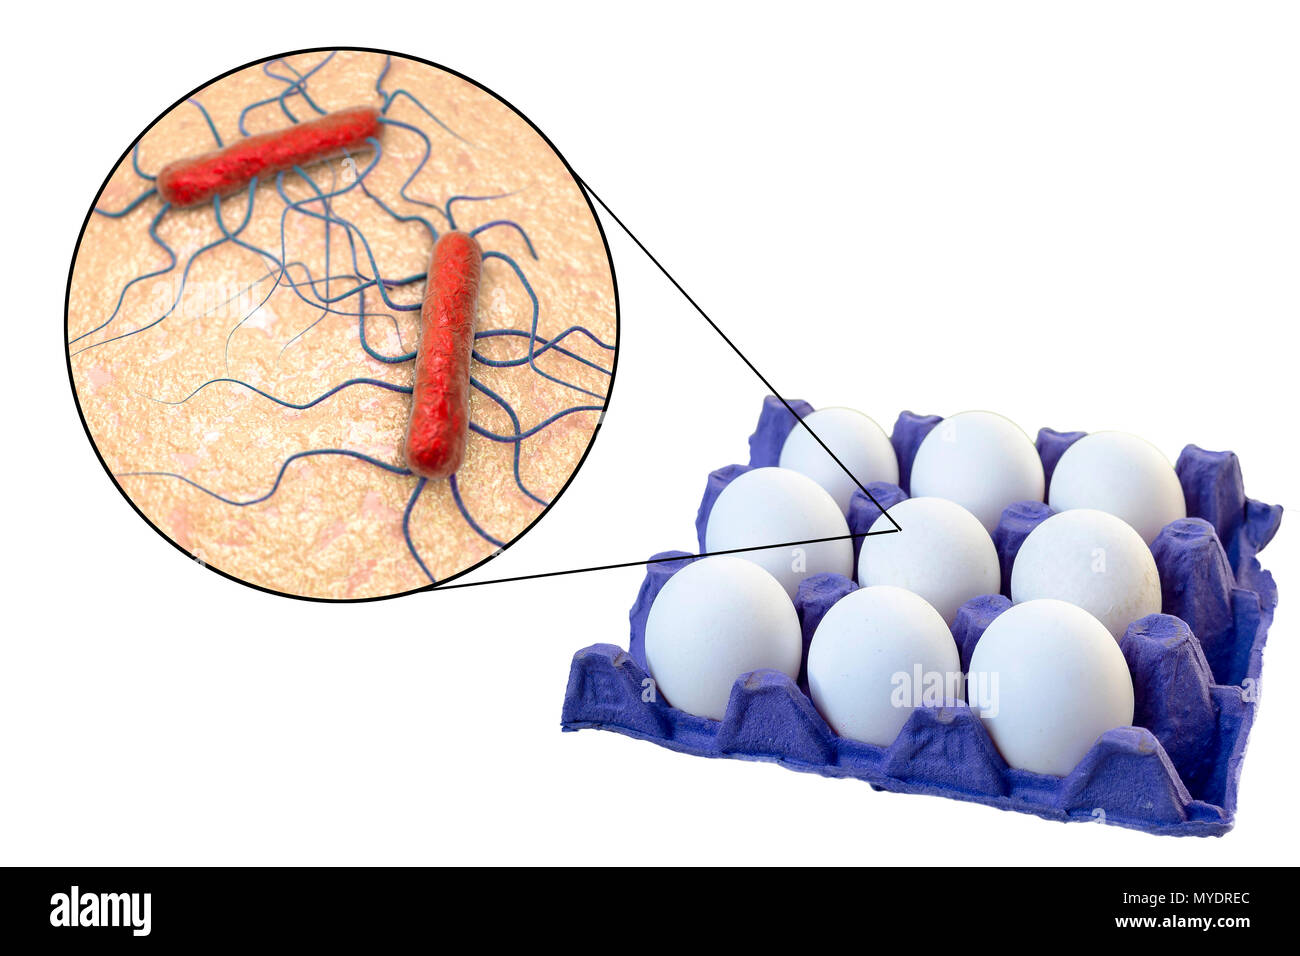 La transmisión de la bacteria Listeria monocytogenes con huevos de gallina, Ilustración conceptual. Foto de stock